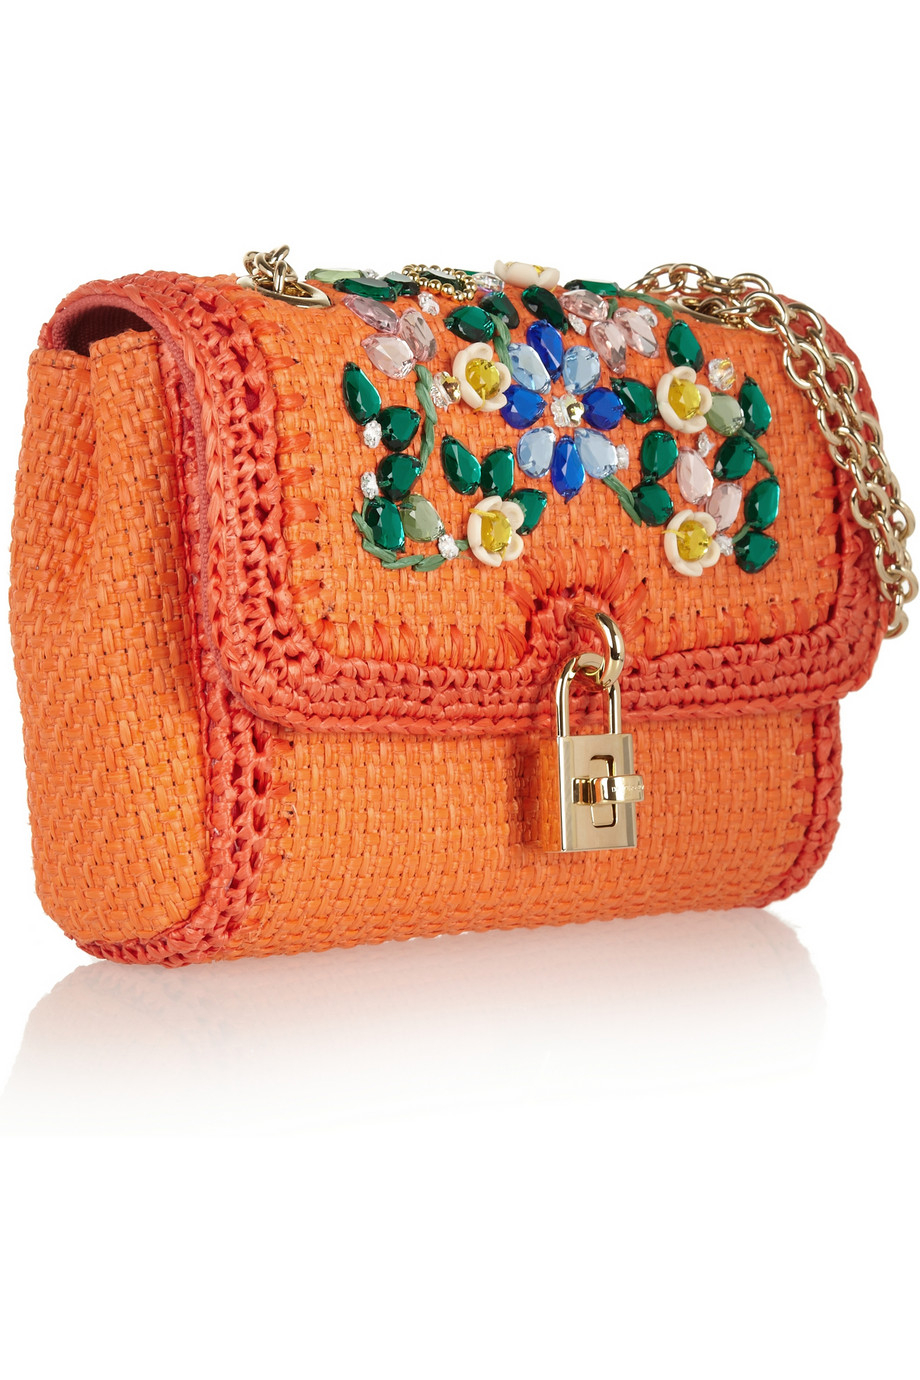 Dolce & gabbana Crystalembellished Raffia Shoulder Bag in Orange | Lyst